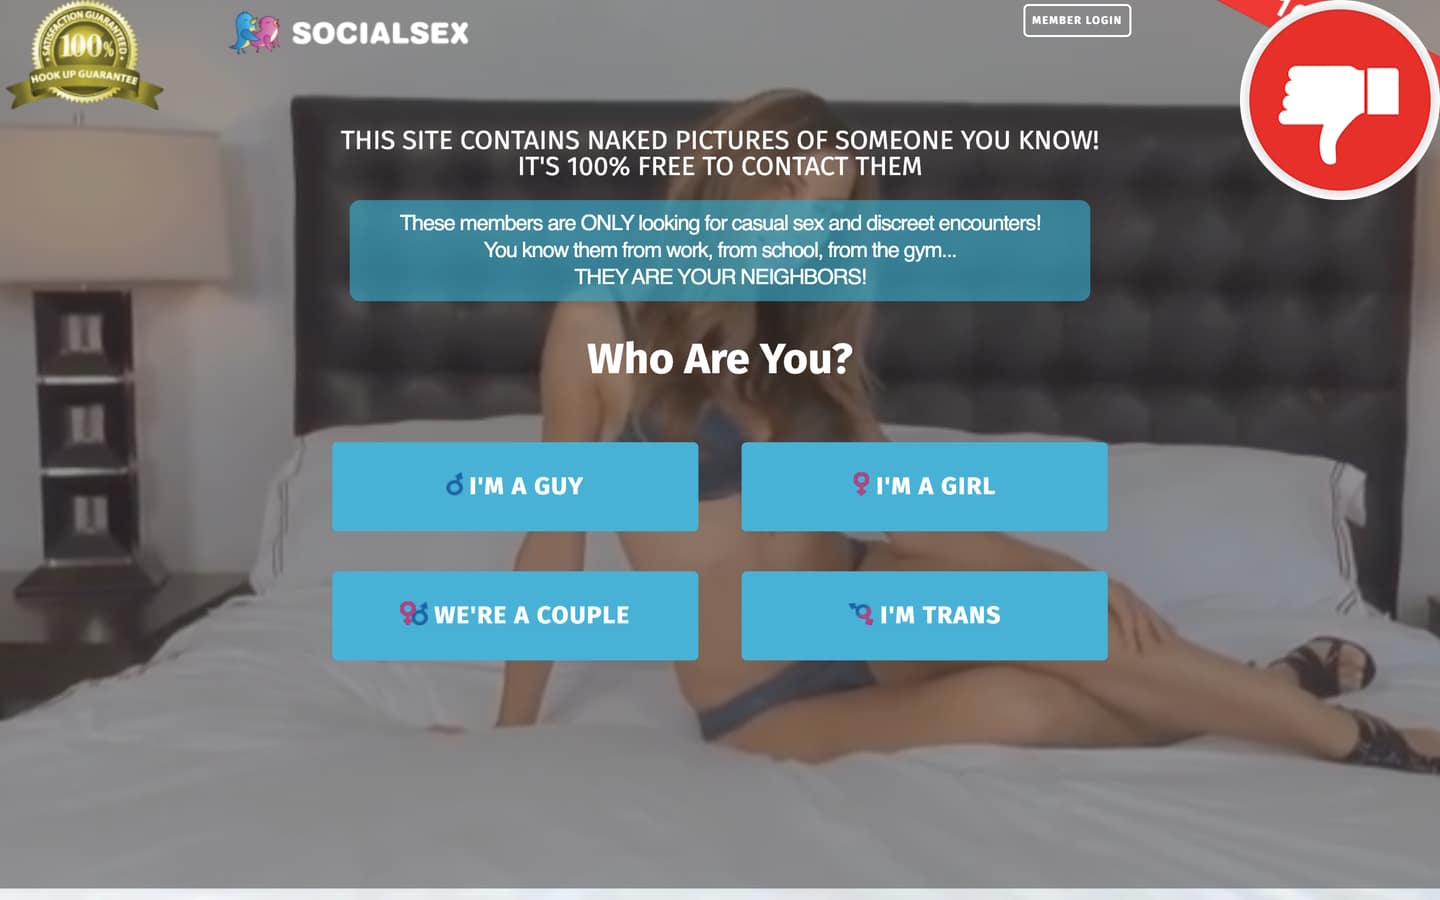 Review SocialSex.com scam experience